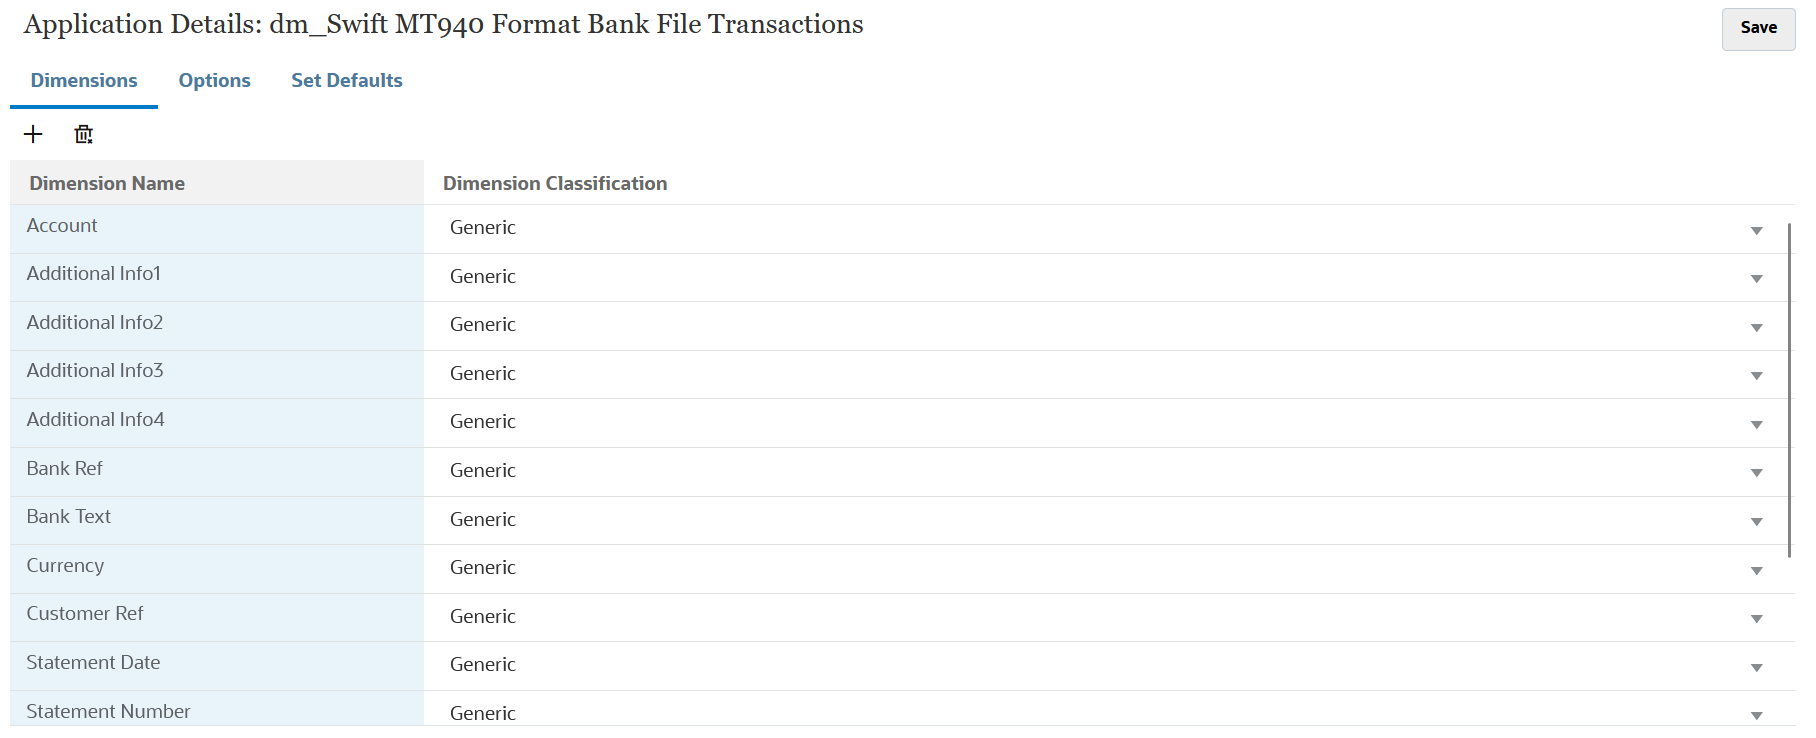 Das Bild zeigt Dimensionsdetails für Transaktionen mit Bankdateien im SWIFT MT940-Format.